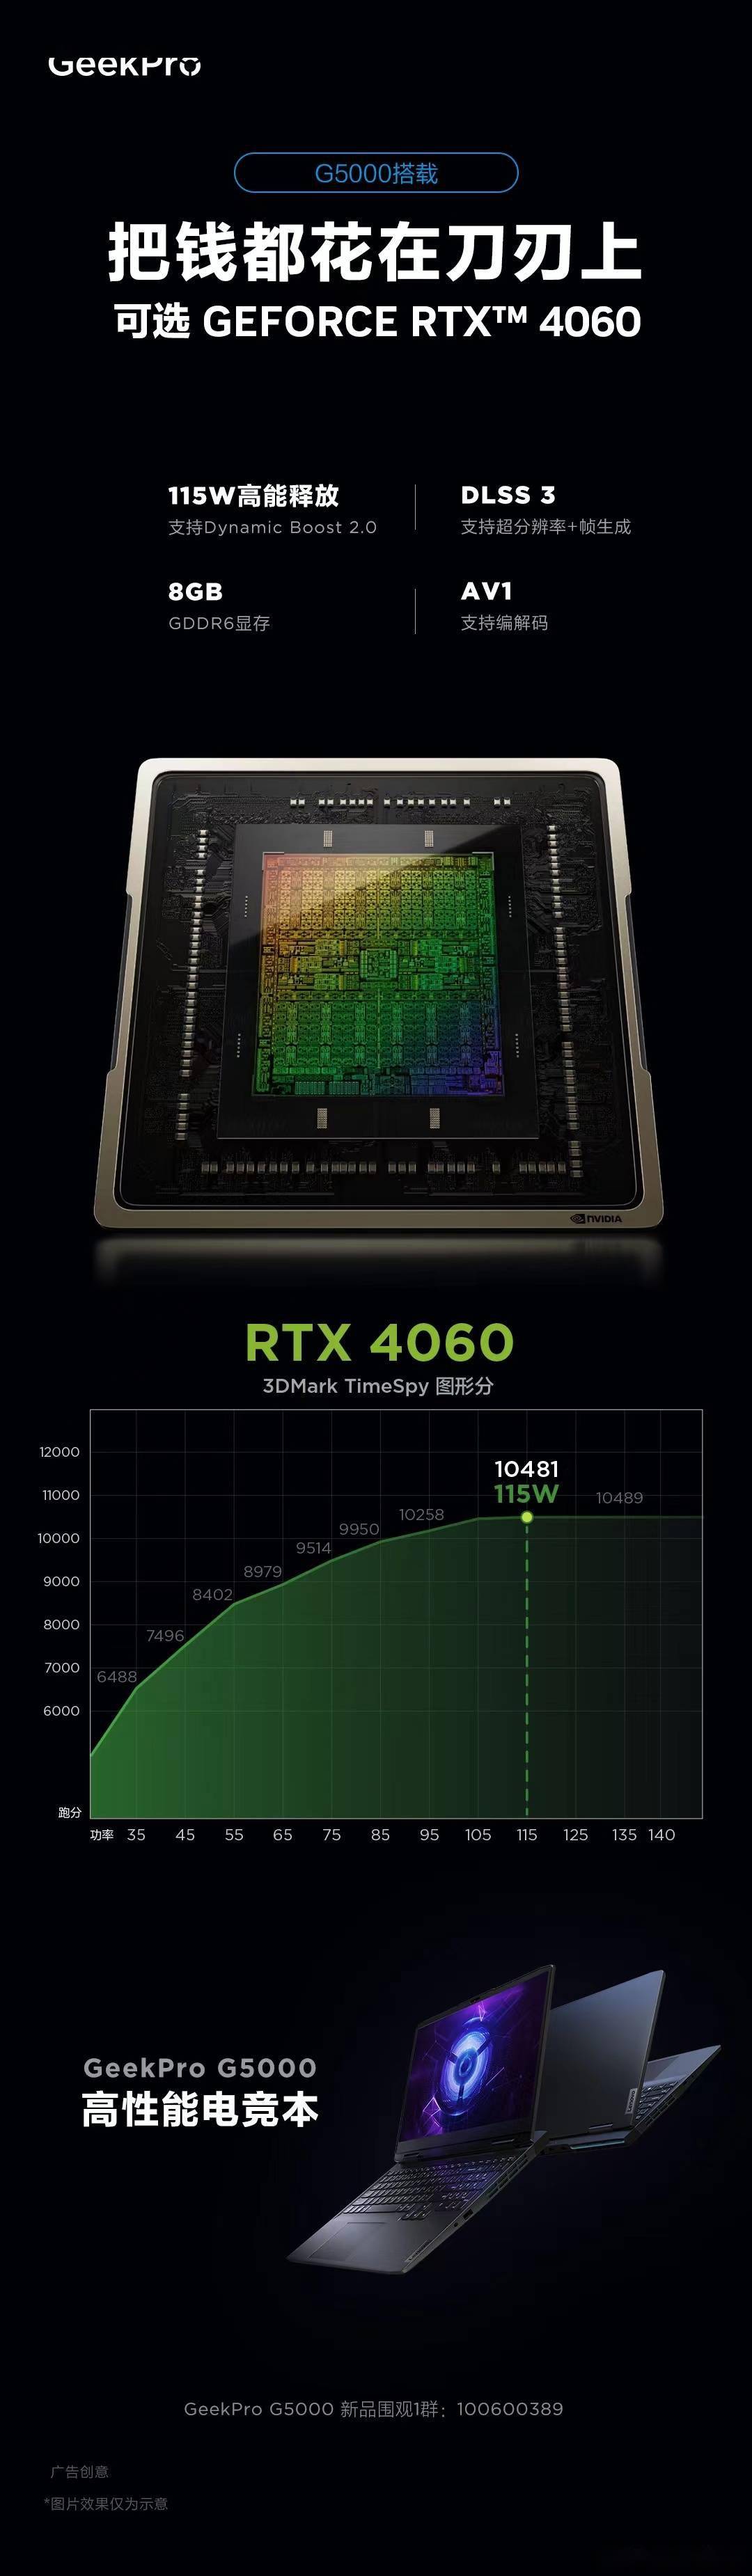 聯想將推出Geek Pro G5000 游戲本    GPU 可達 115W 性能釋放